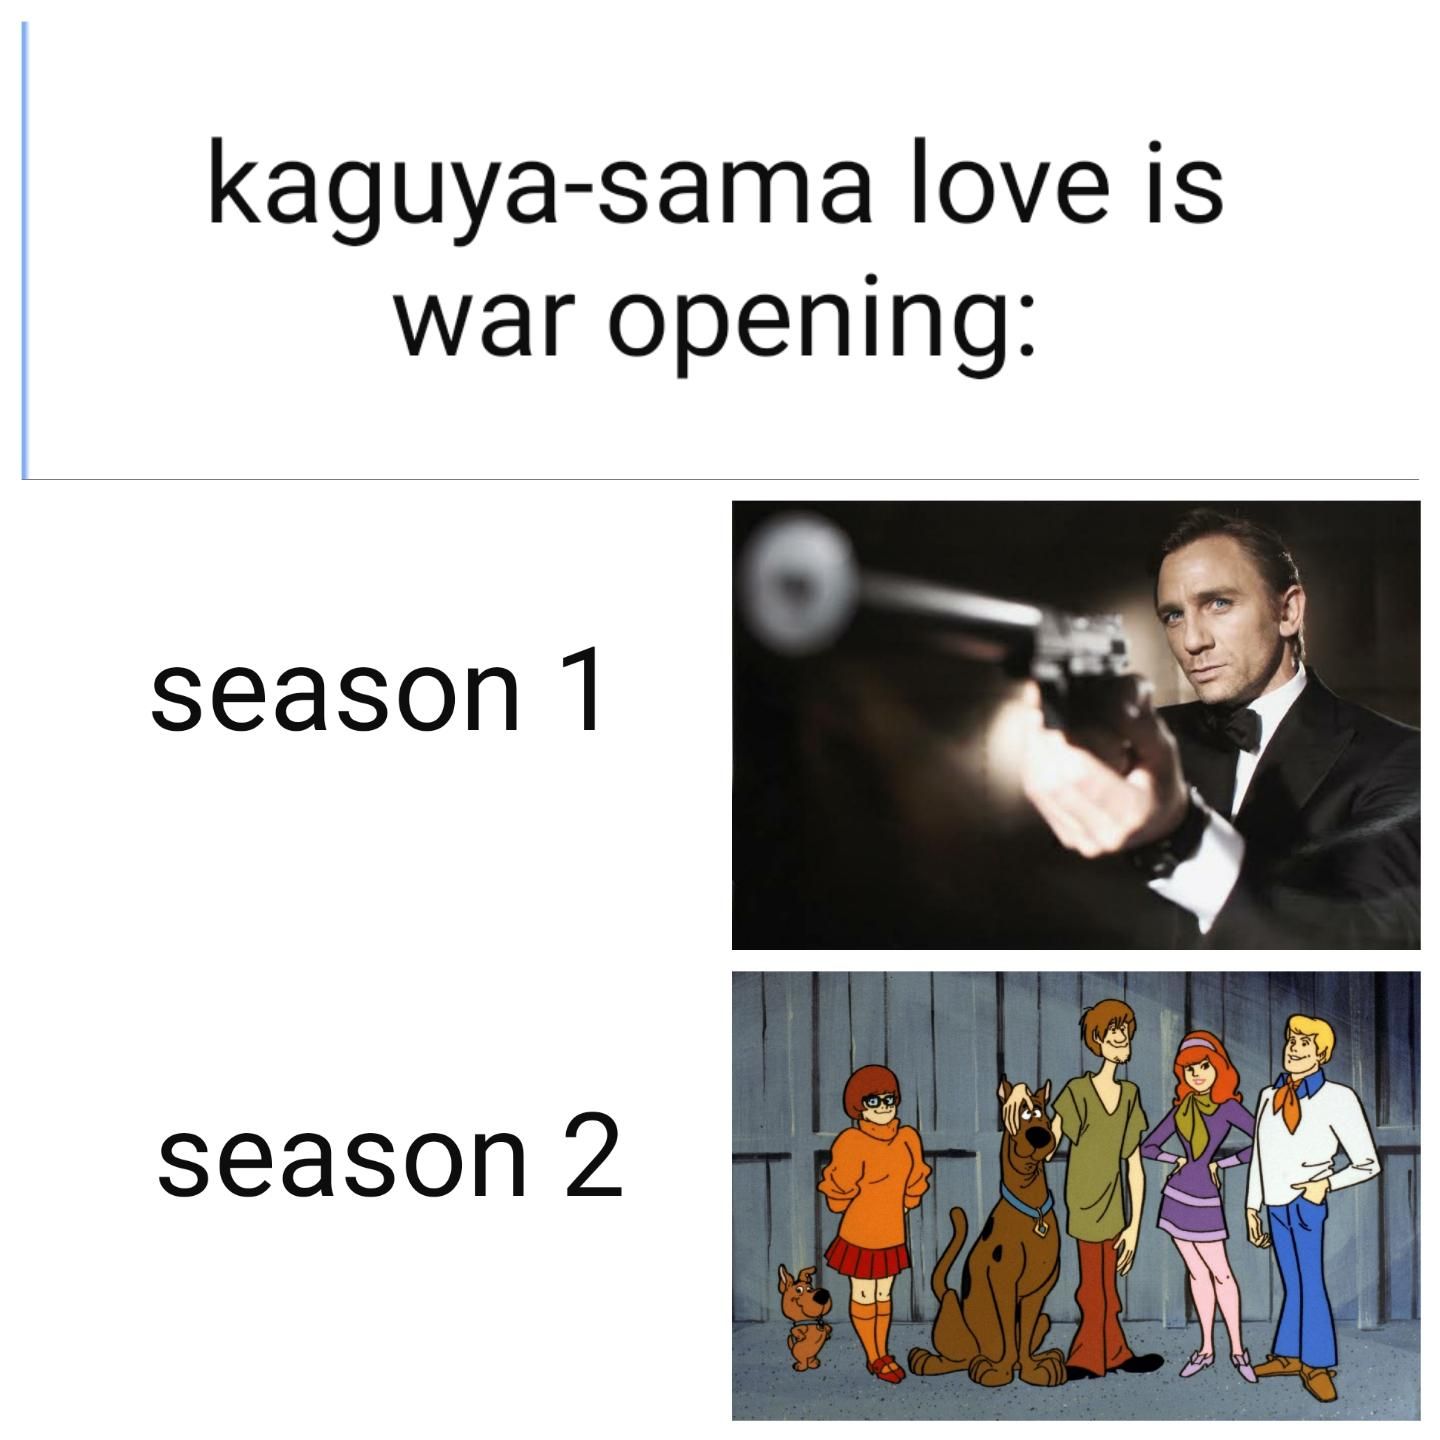 Kaguya-sama Love is War #92